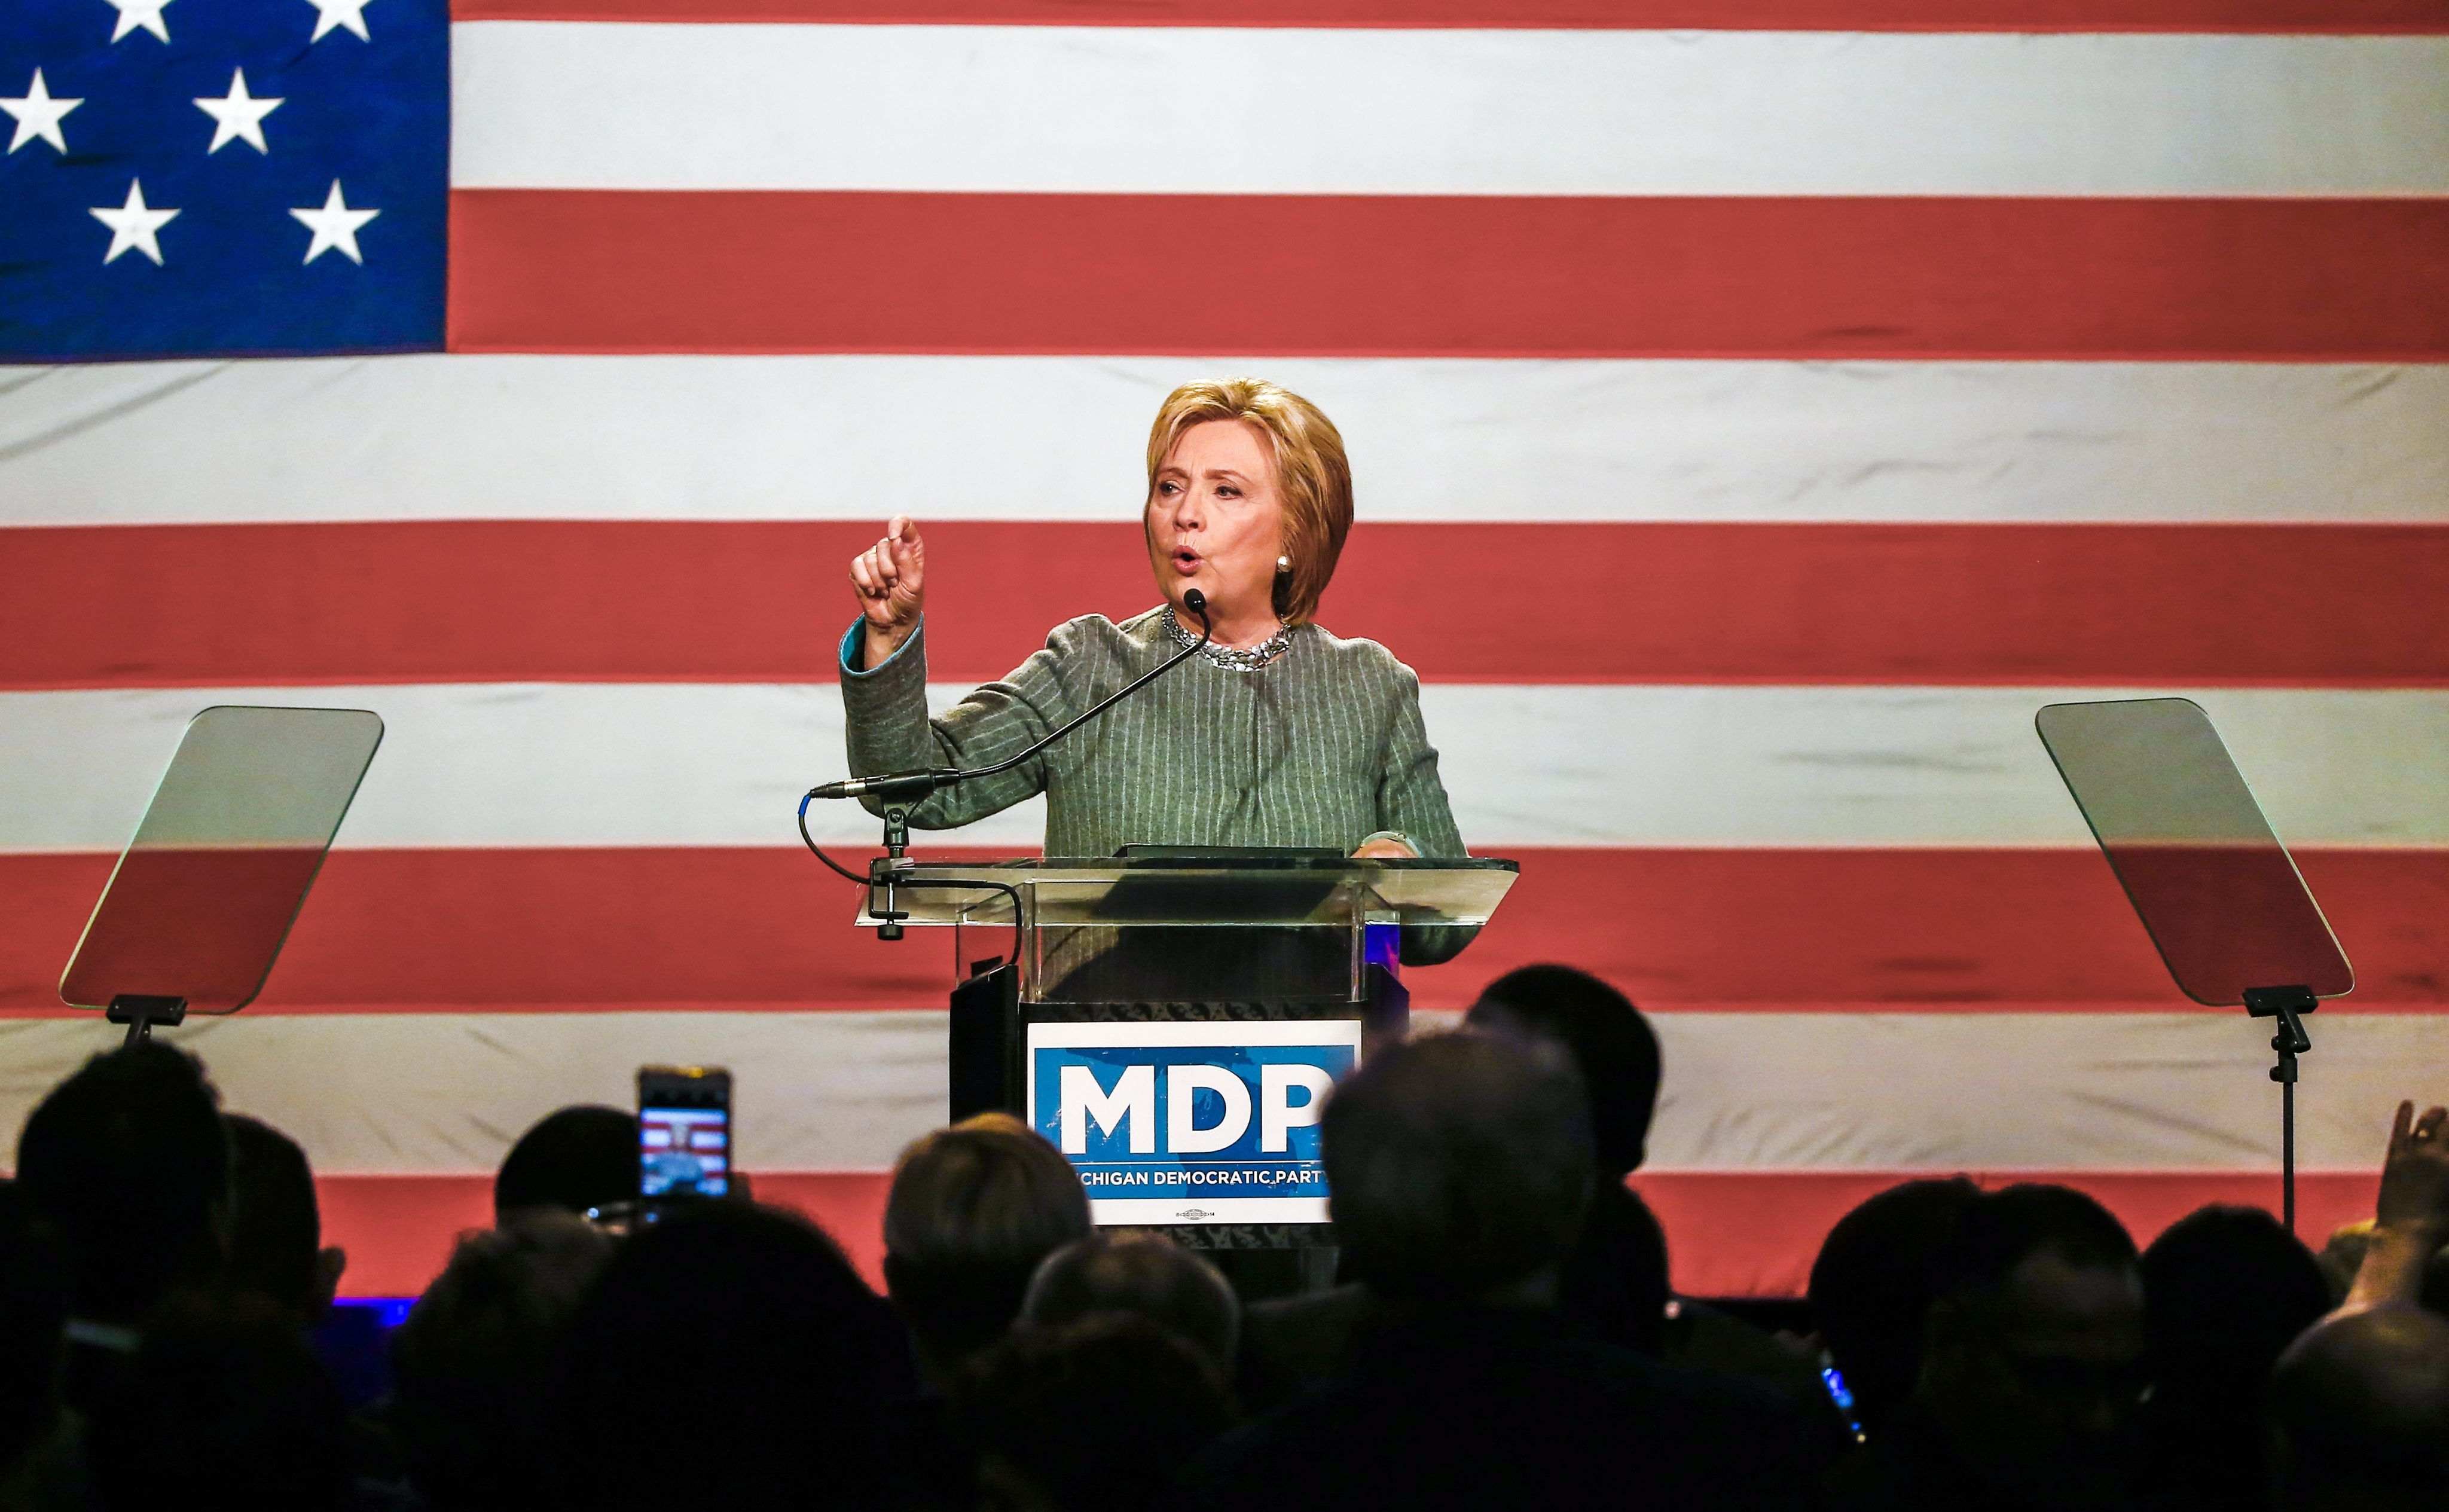 Clinton busca hacerse con la candidatura demócrata de una vez por todas